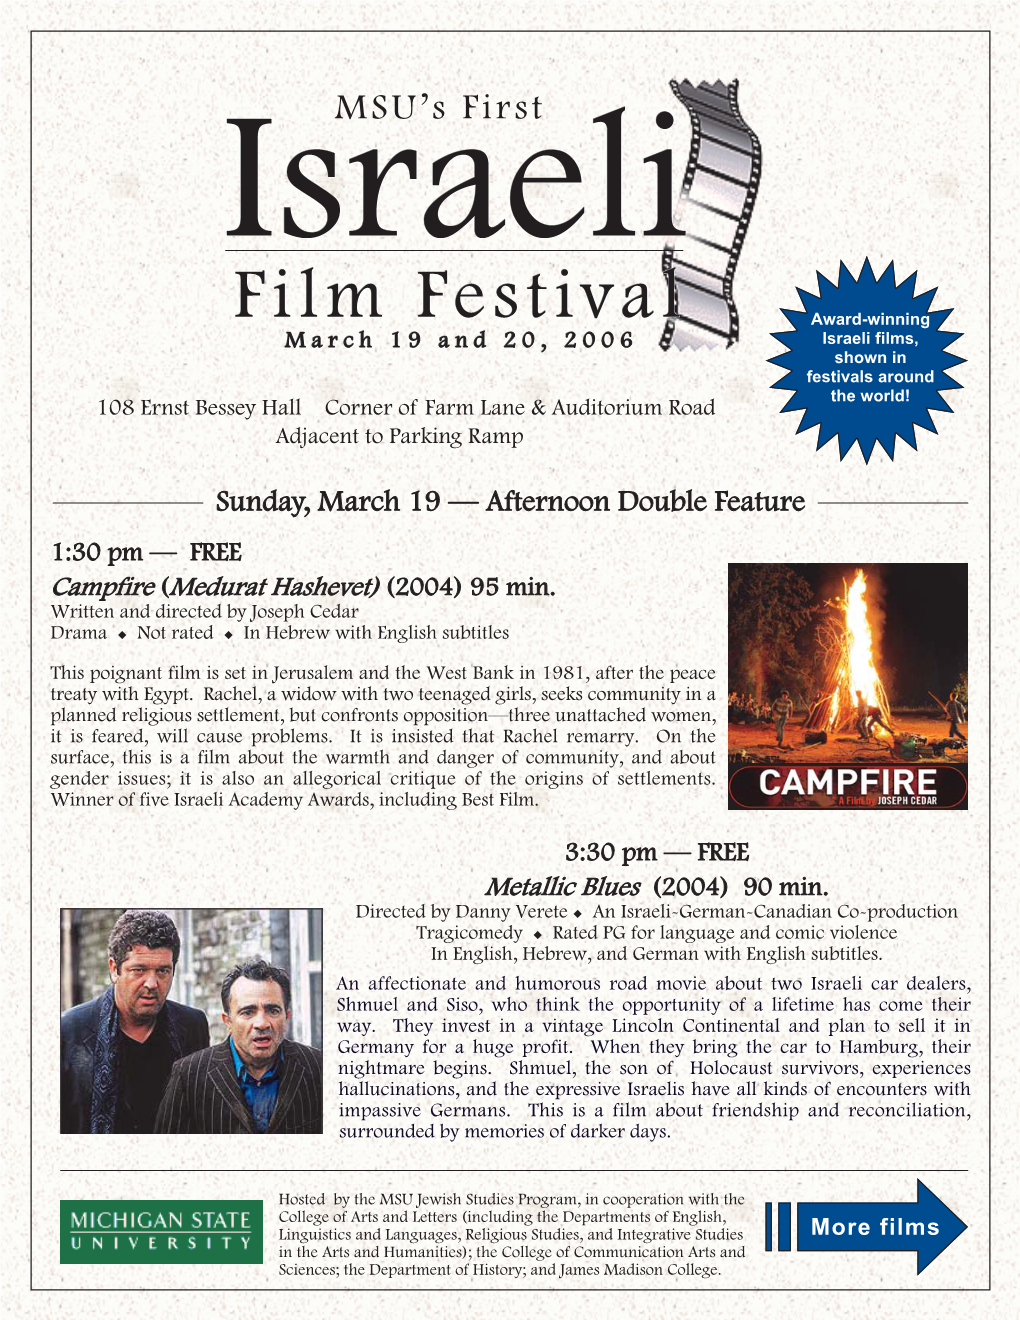 The First Israeli Film Festival 2006